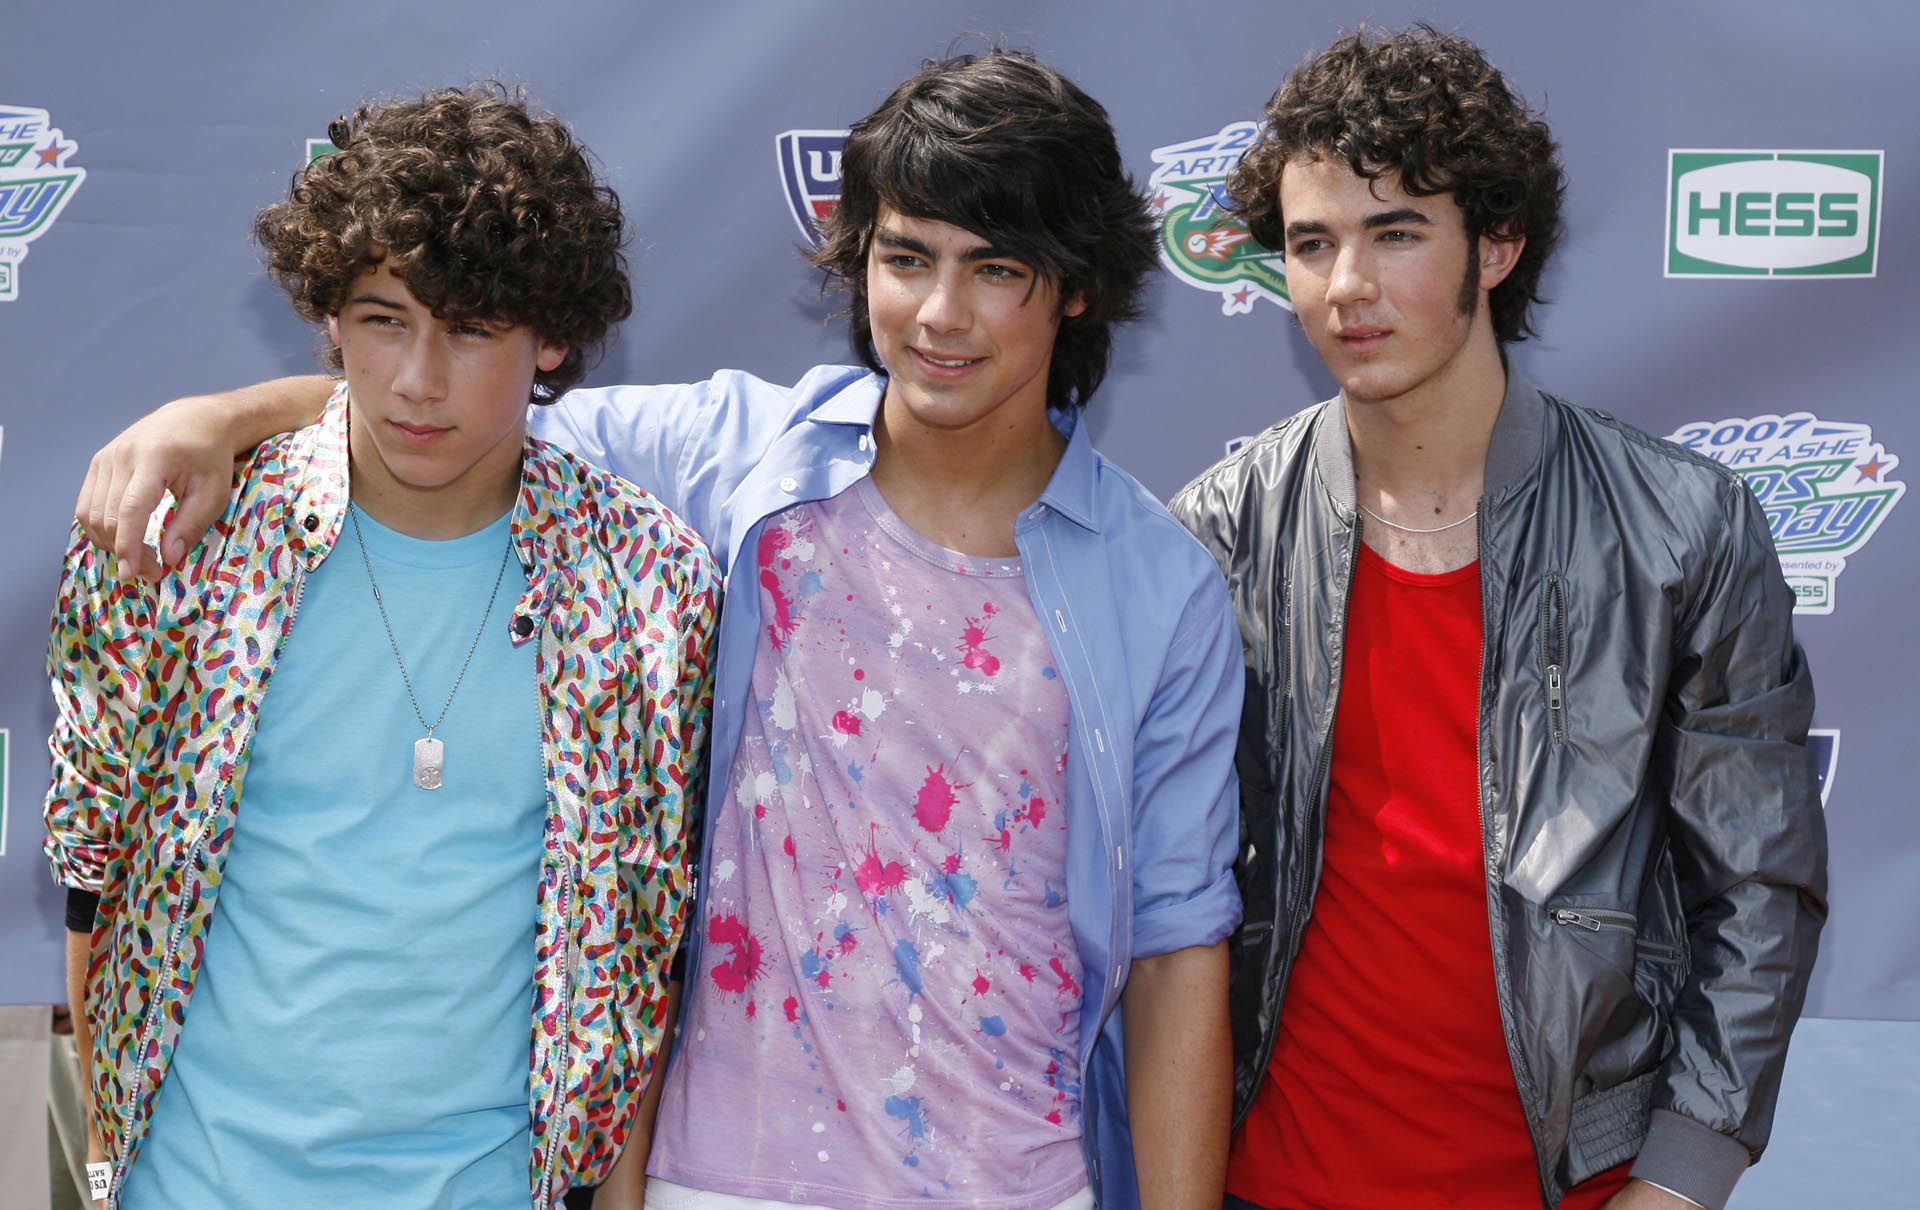 Los Jonas Brothers en 2007 (Crédito: Shutterstock)